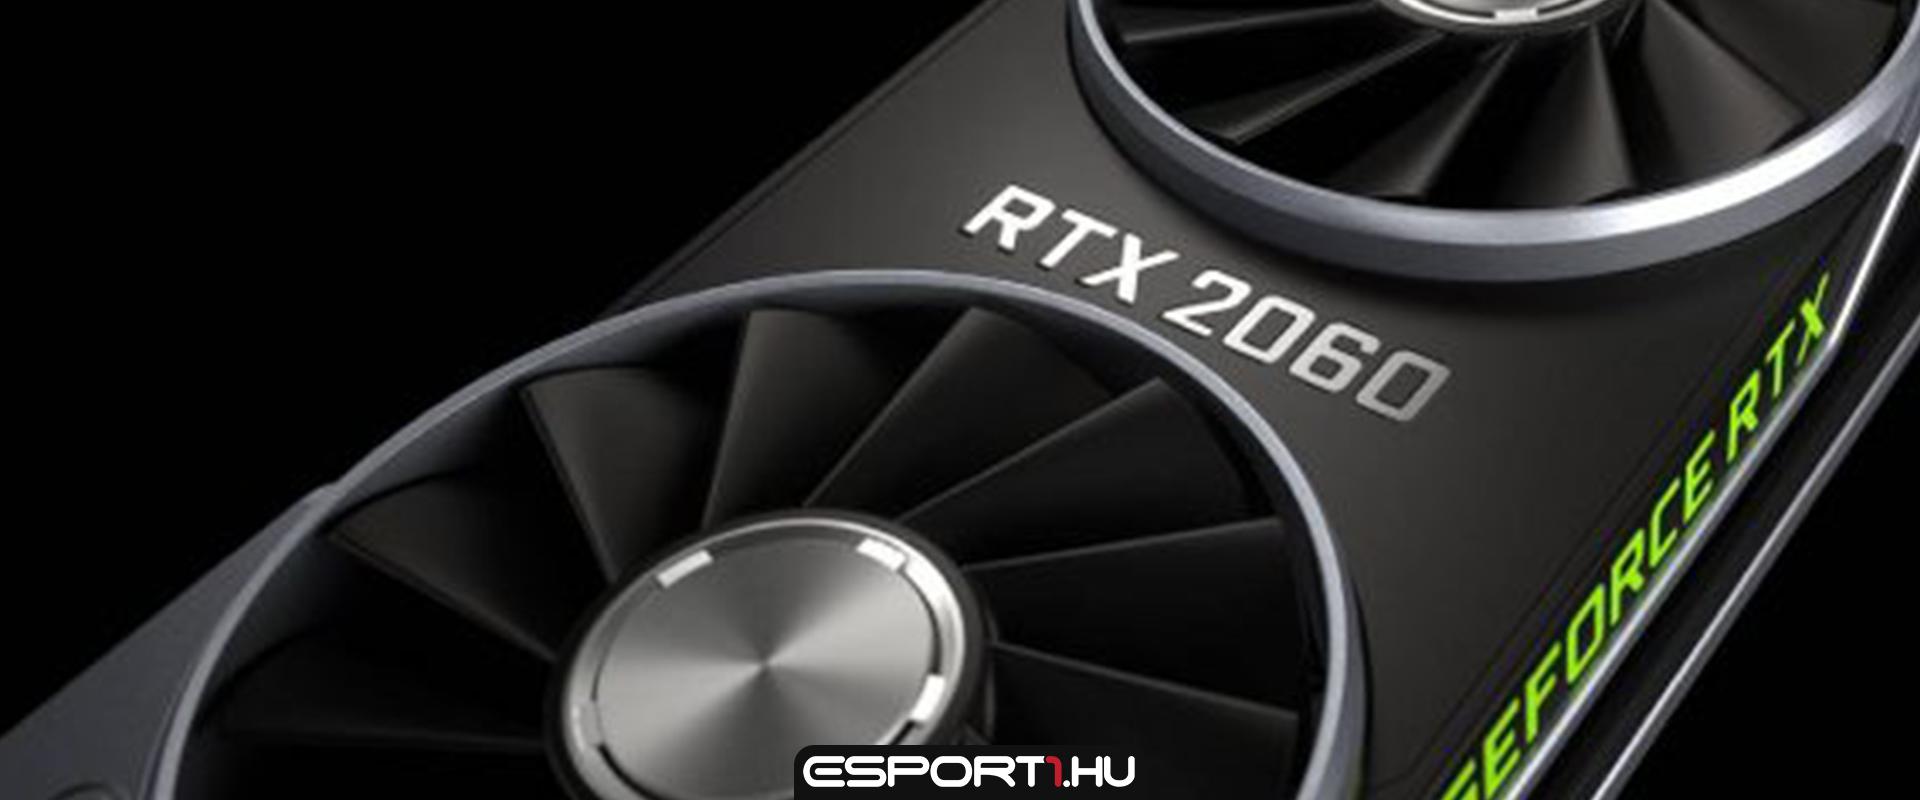 Még ebben a hónapban jelenik meg az Nvidia RTX 2060 12 GB-os változata